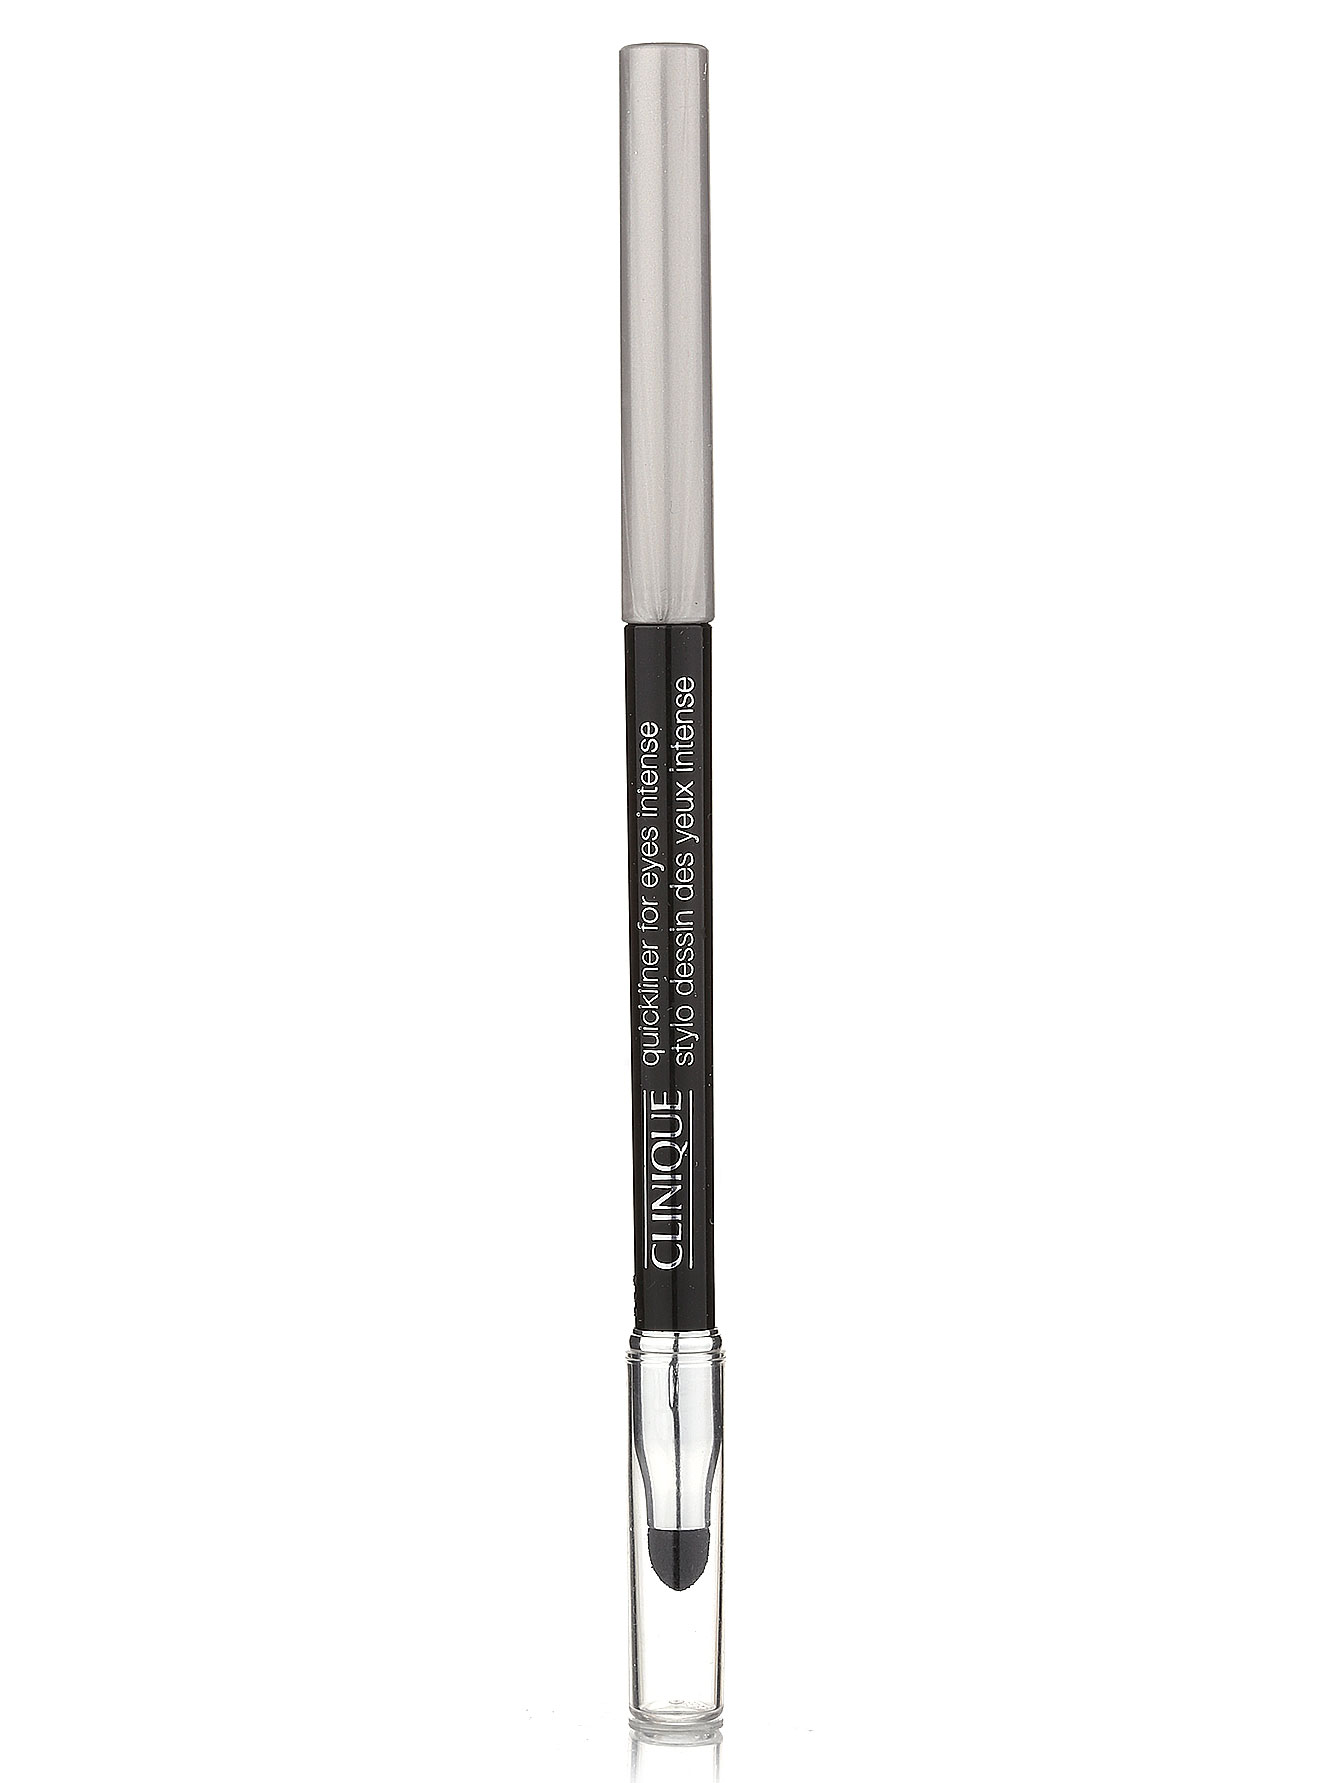  Автоматический карандаш для глаз с растушевкой - Черный, Quickliner - Модель Верх-Низ